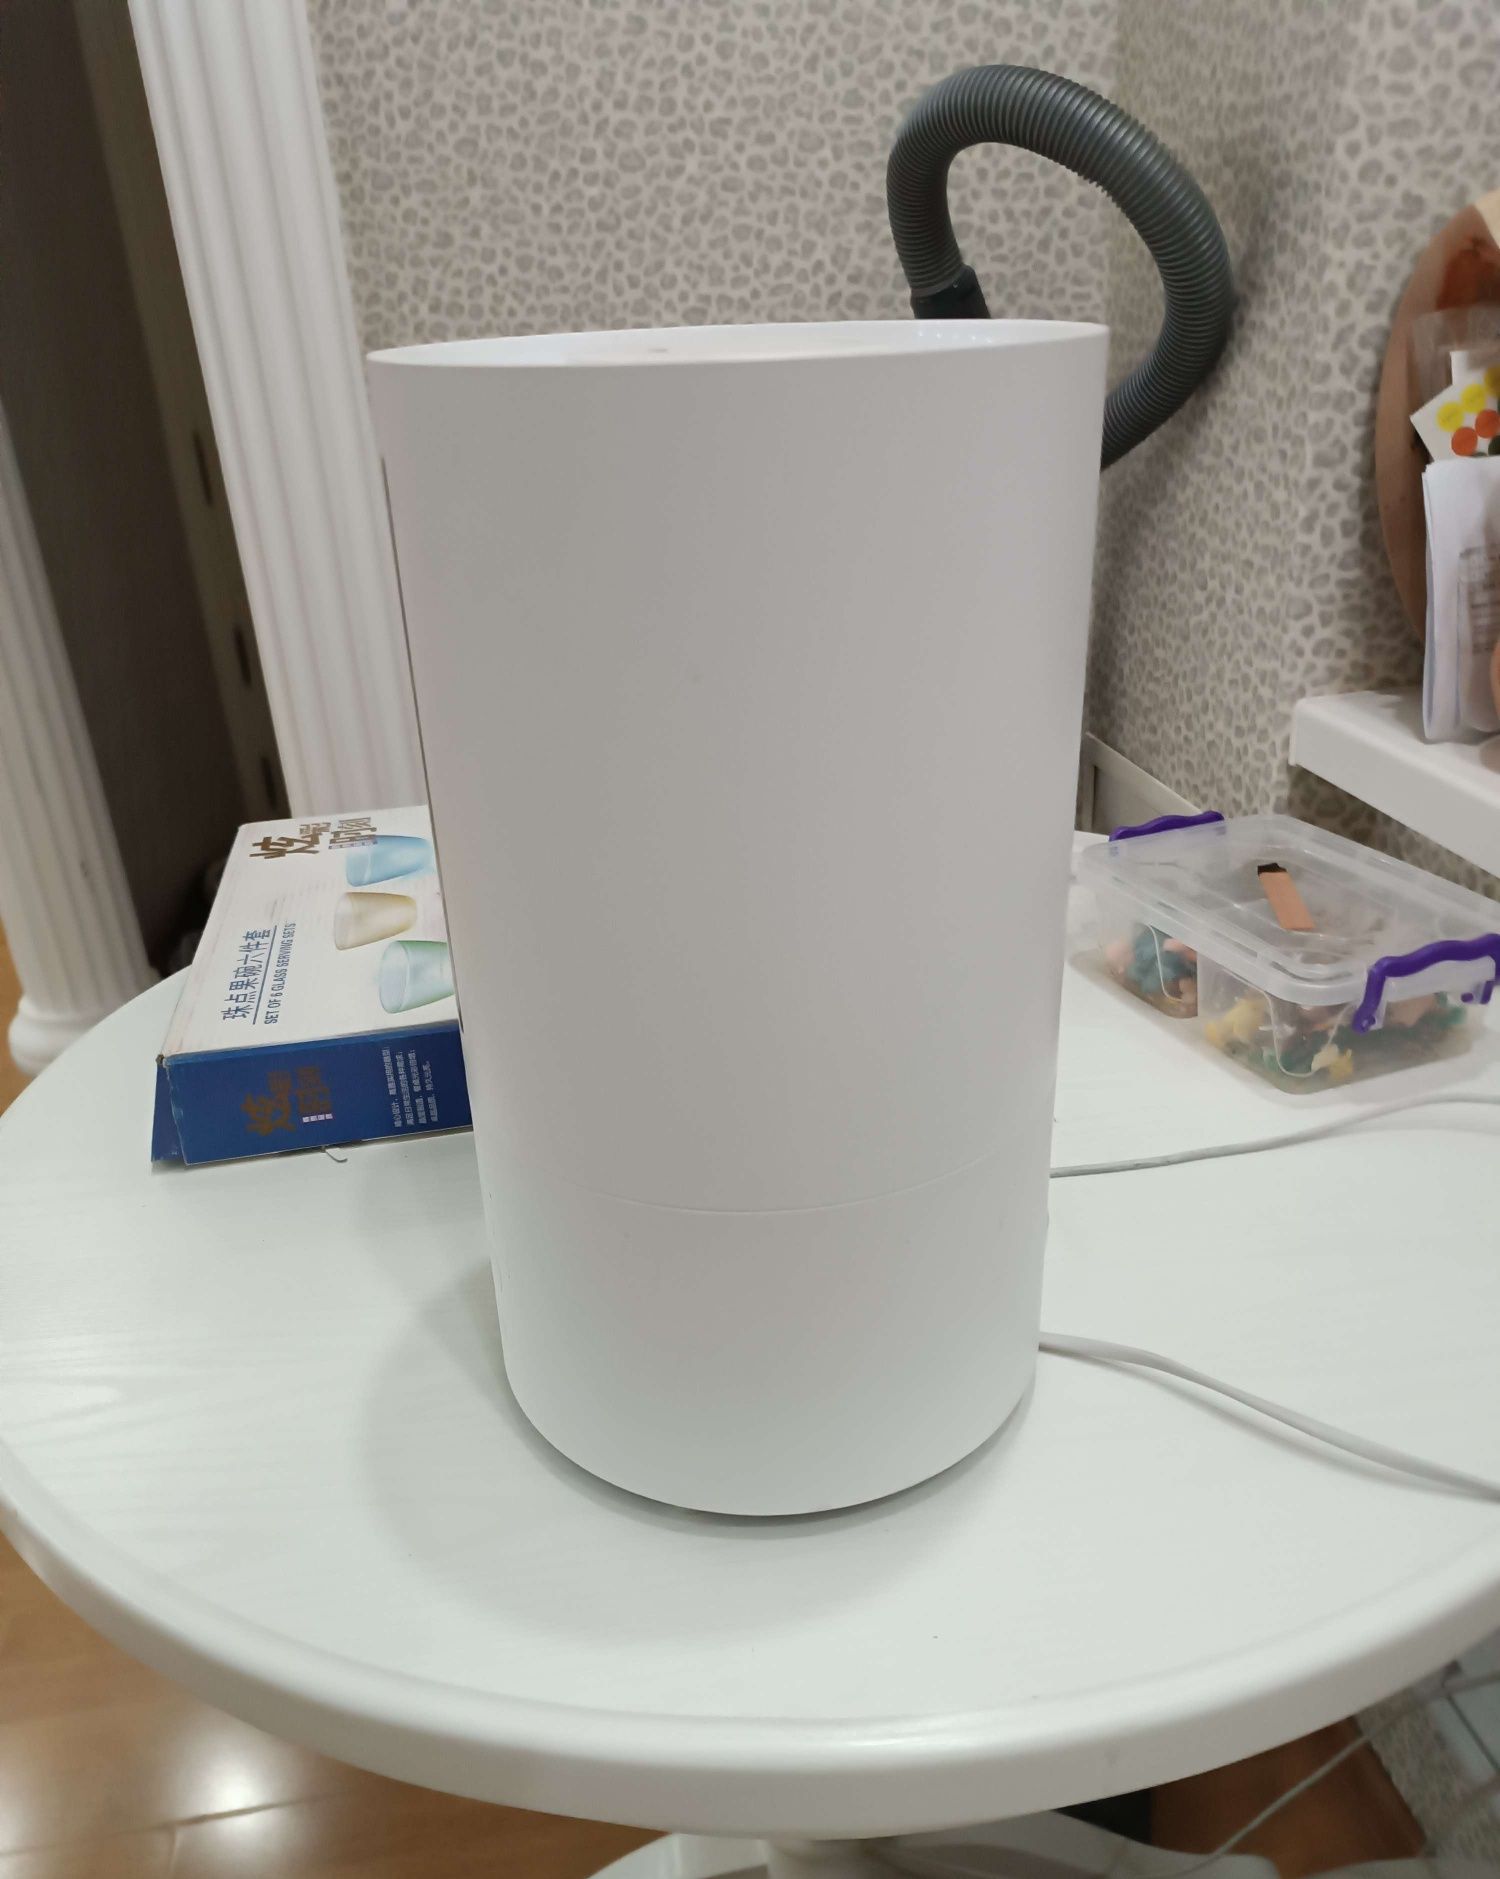 Увлажнитель воздуха Xiaomi Smart Humidifier 2